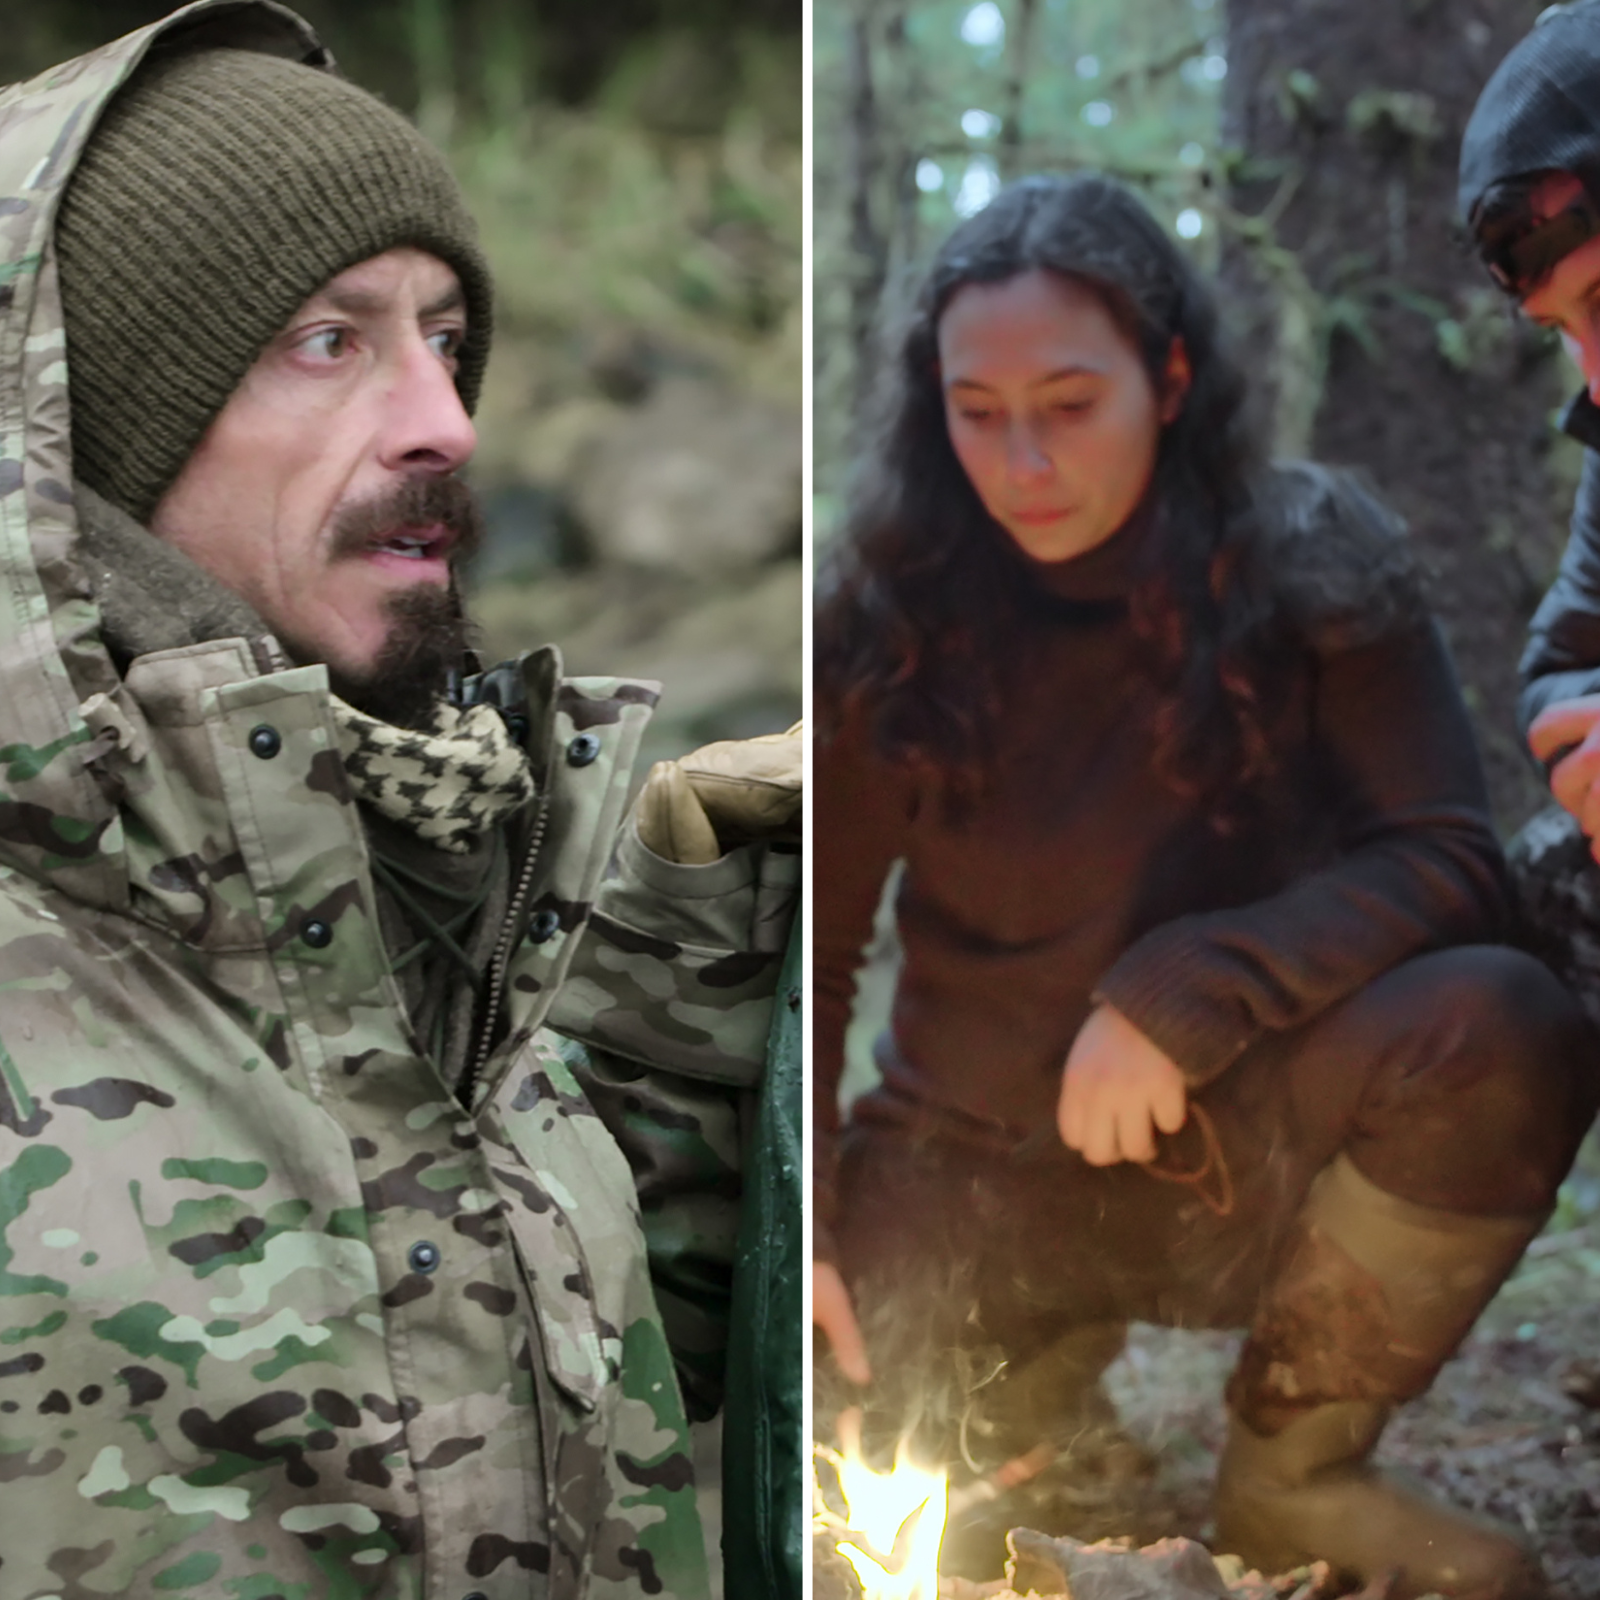 Outlast Cast: Meet the 16 Survivalists Competing for $1 Million - Netflix  Tudum